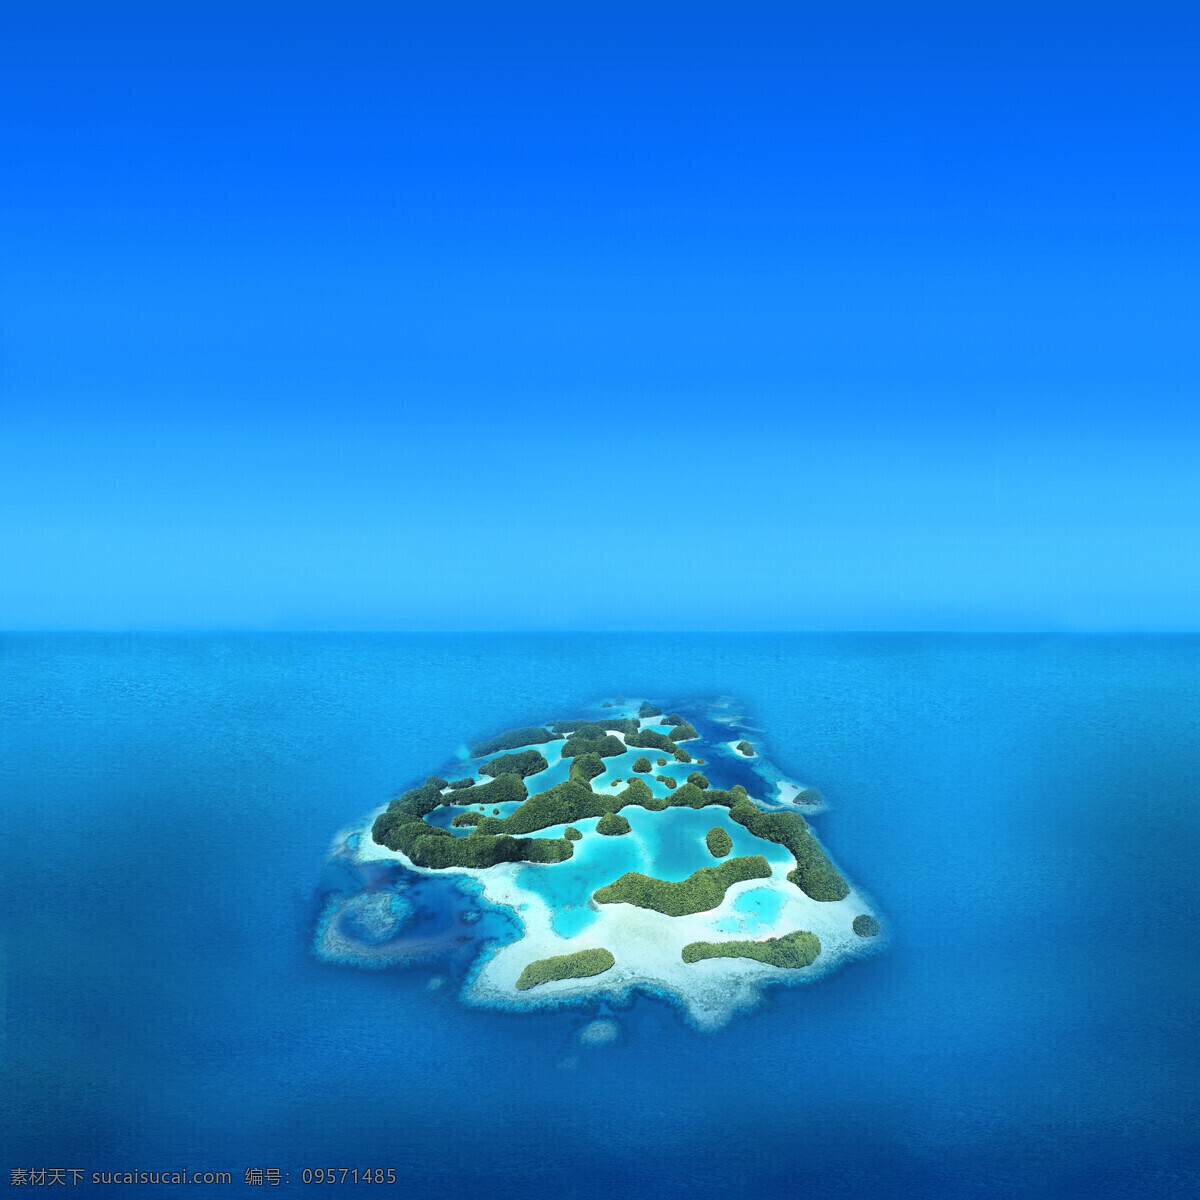 海上 风景 蓝色 唯美 美境 度假 休闲 小岛 大海 大海图片 风景图片